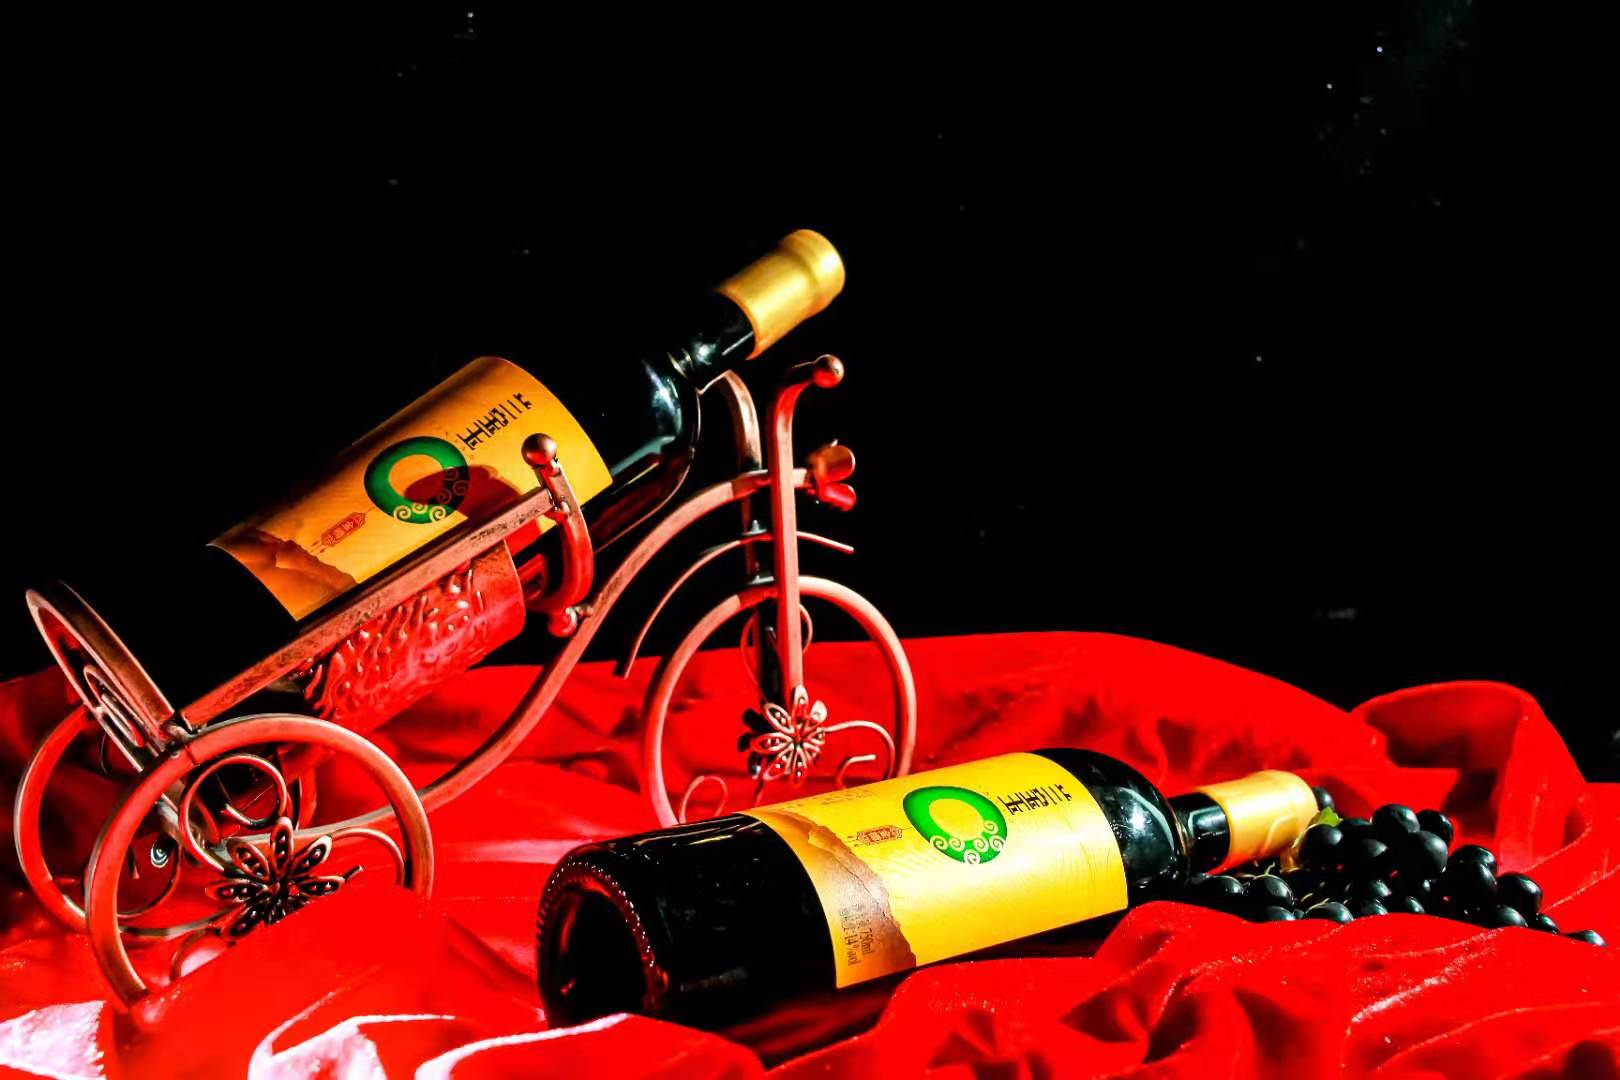 兰宝玉金樽国产橡木桶窖藏赤霞珠干红葡萄酒 蛇龙珠美乐酿制包邮